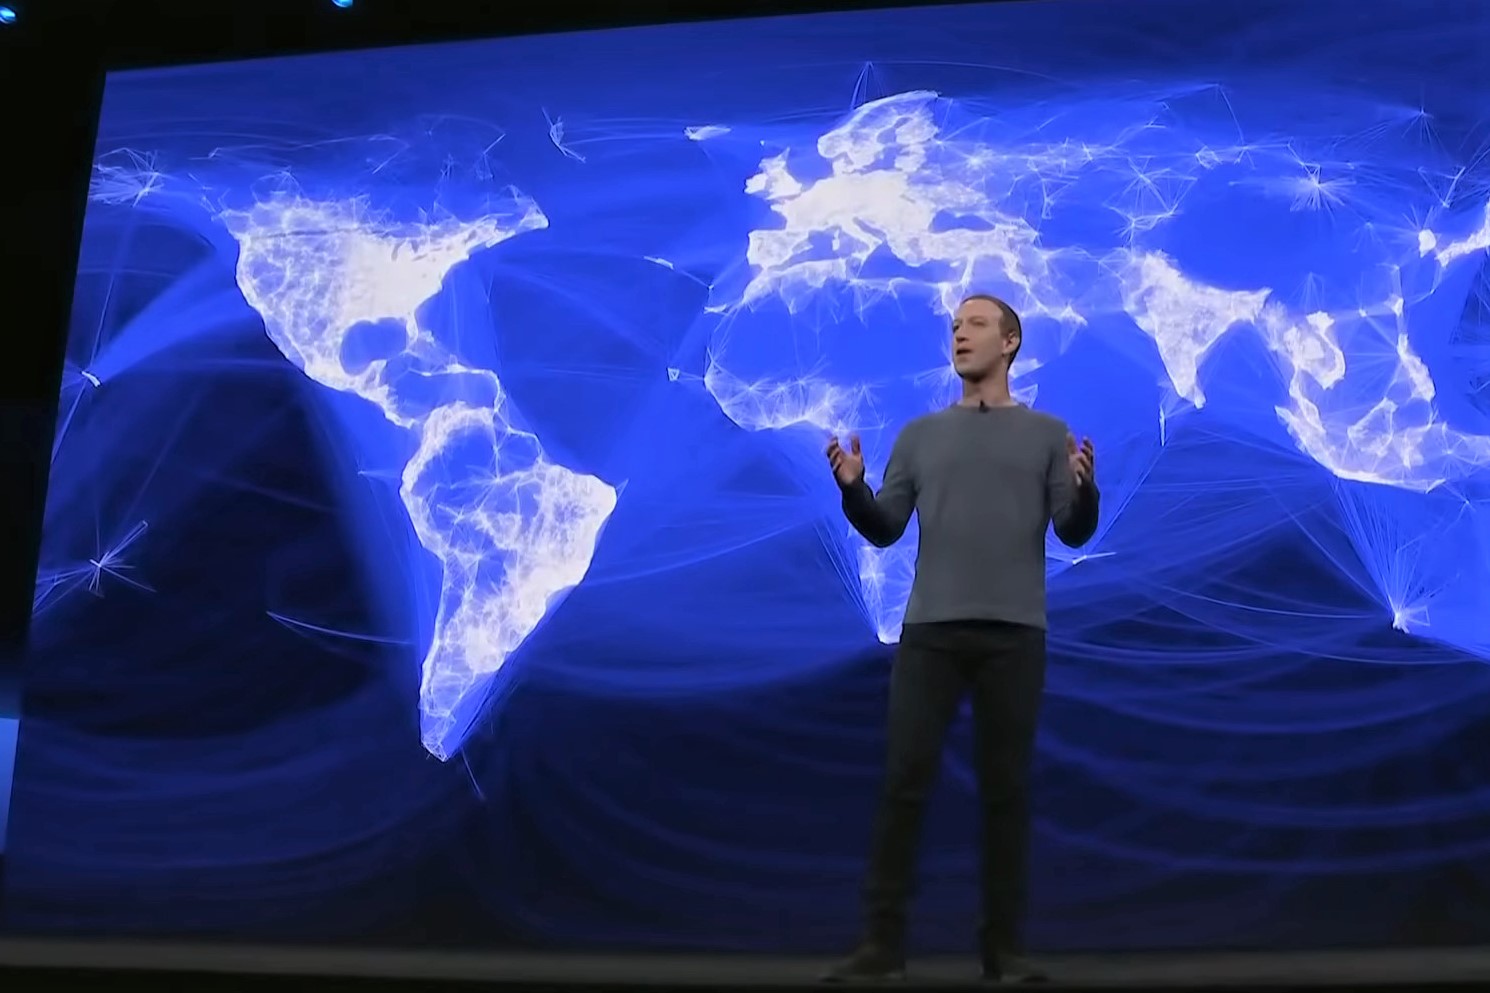 Con Libra, Facebook si muove verso il diventare una nazione indipendente